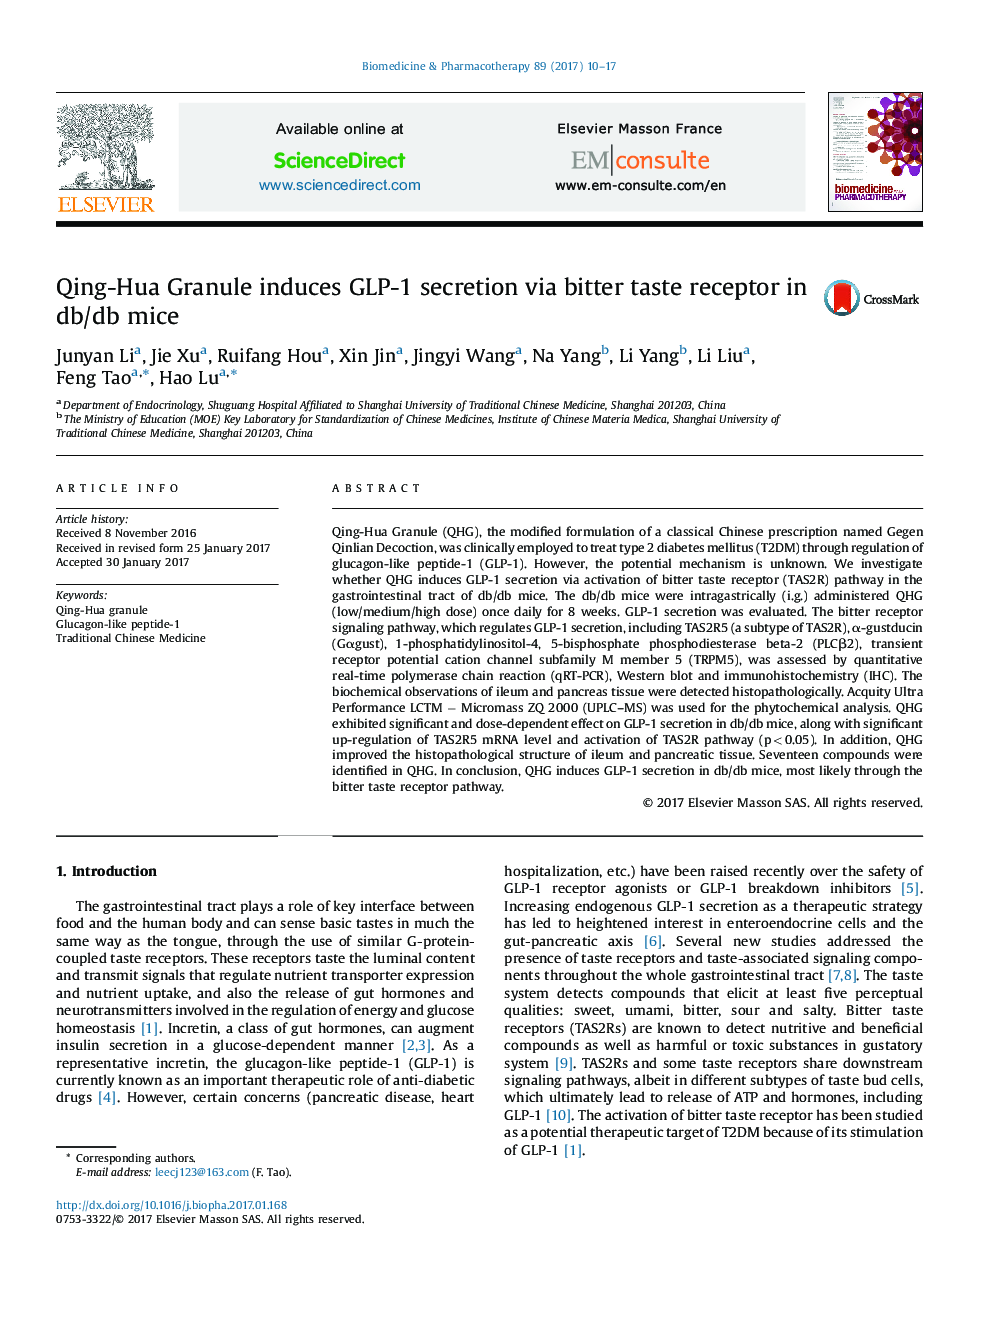 Qing-Hua Granule induces GLP-1 secretion via bitter taste receptor in db/db mice